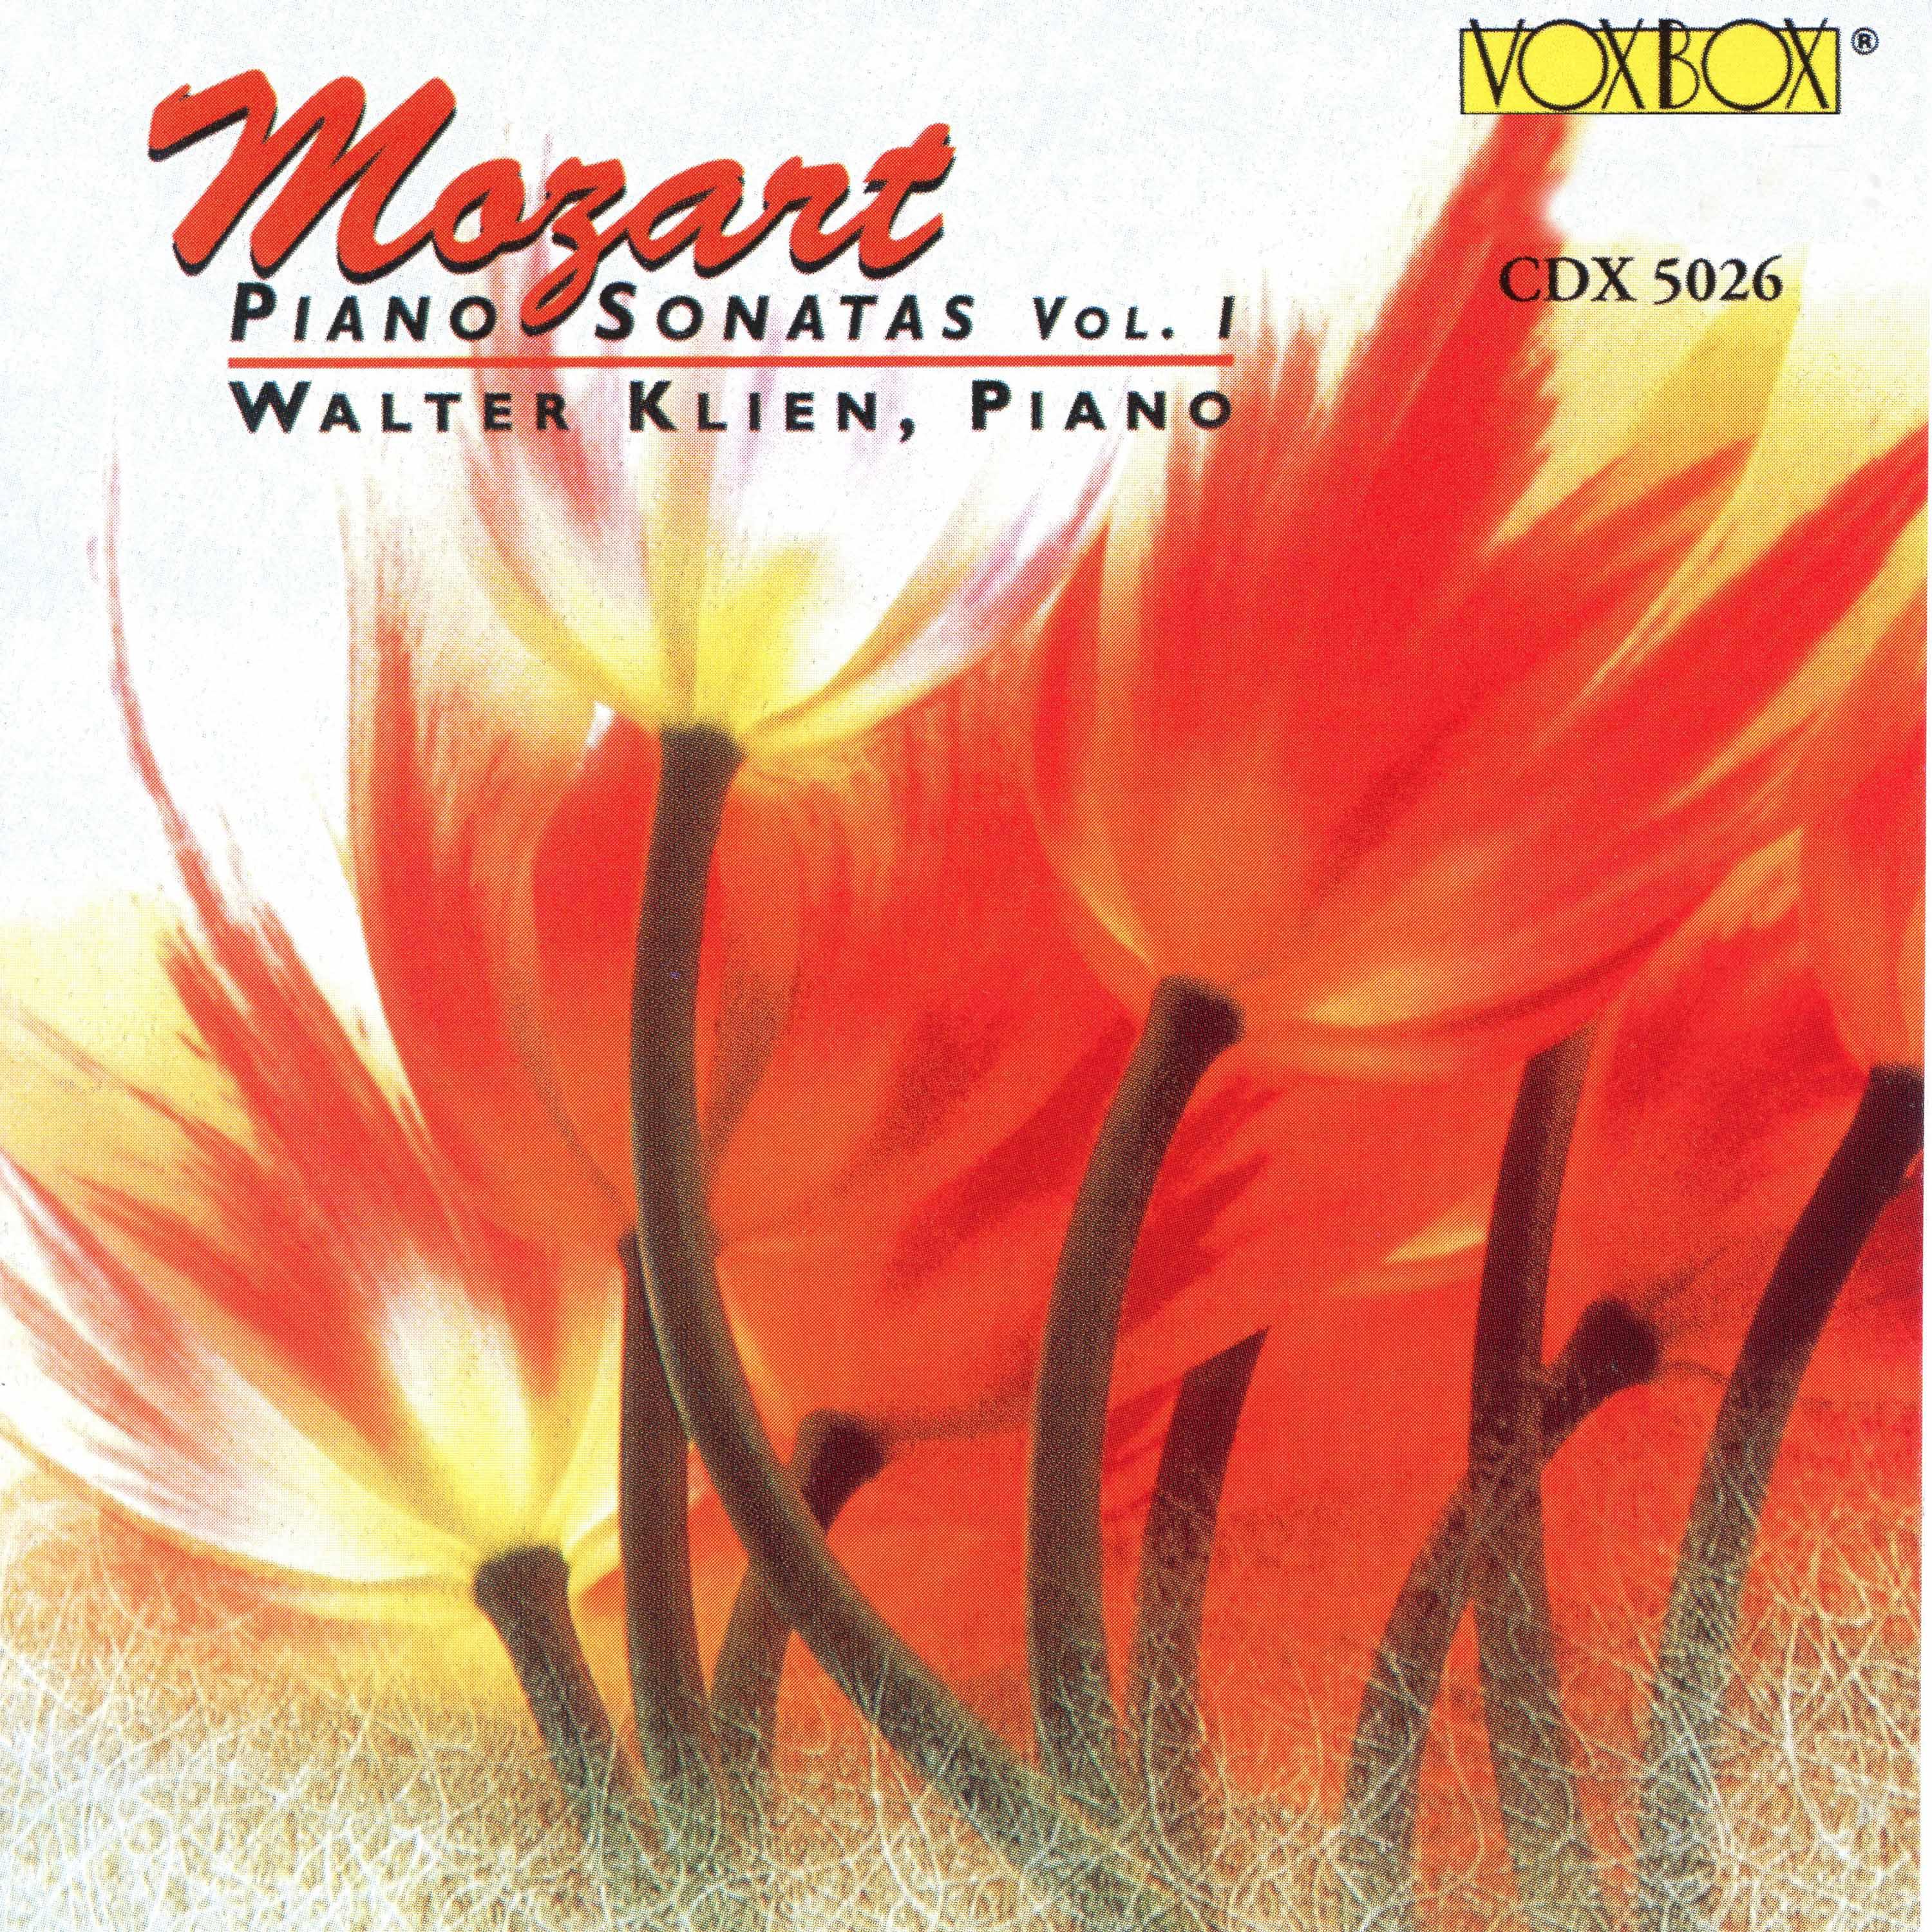 Mozart: Piano Sonatas, Vol. 1